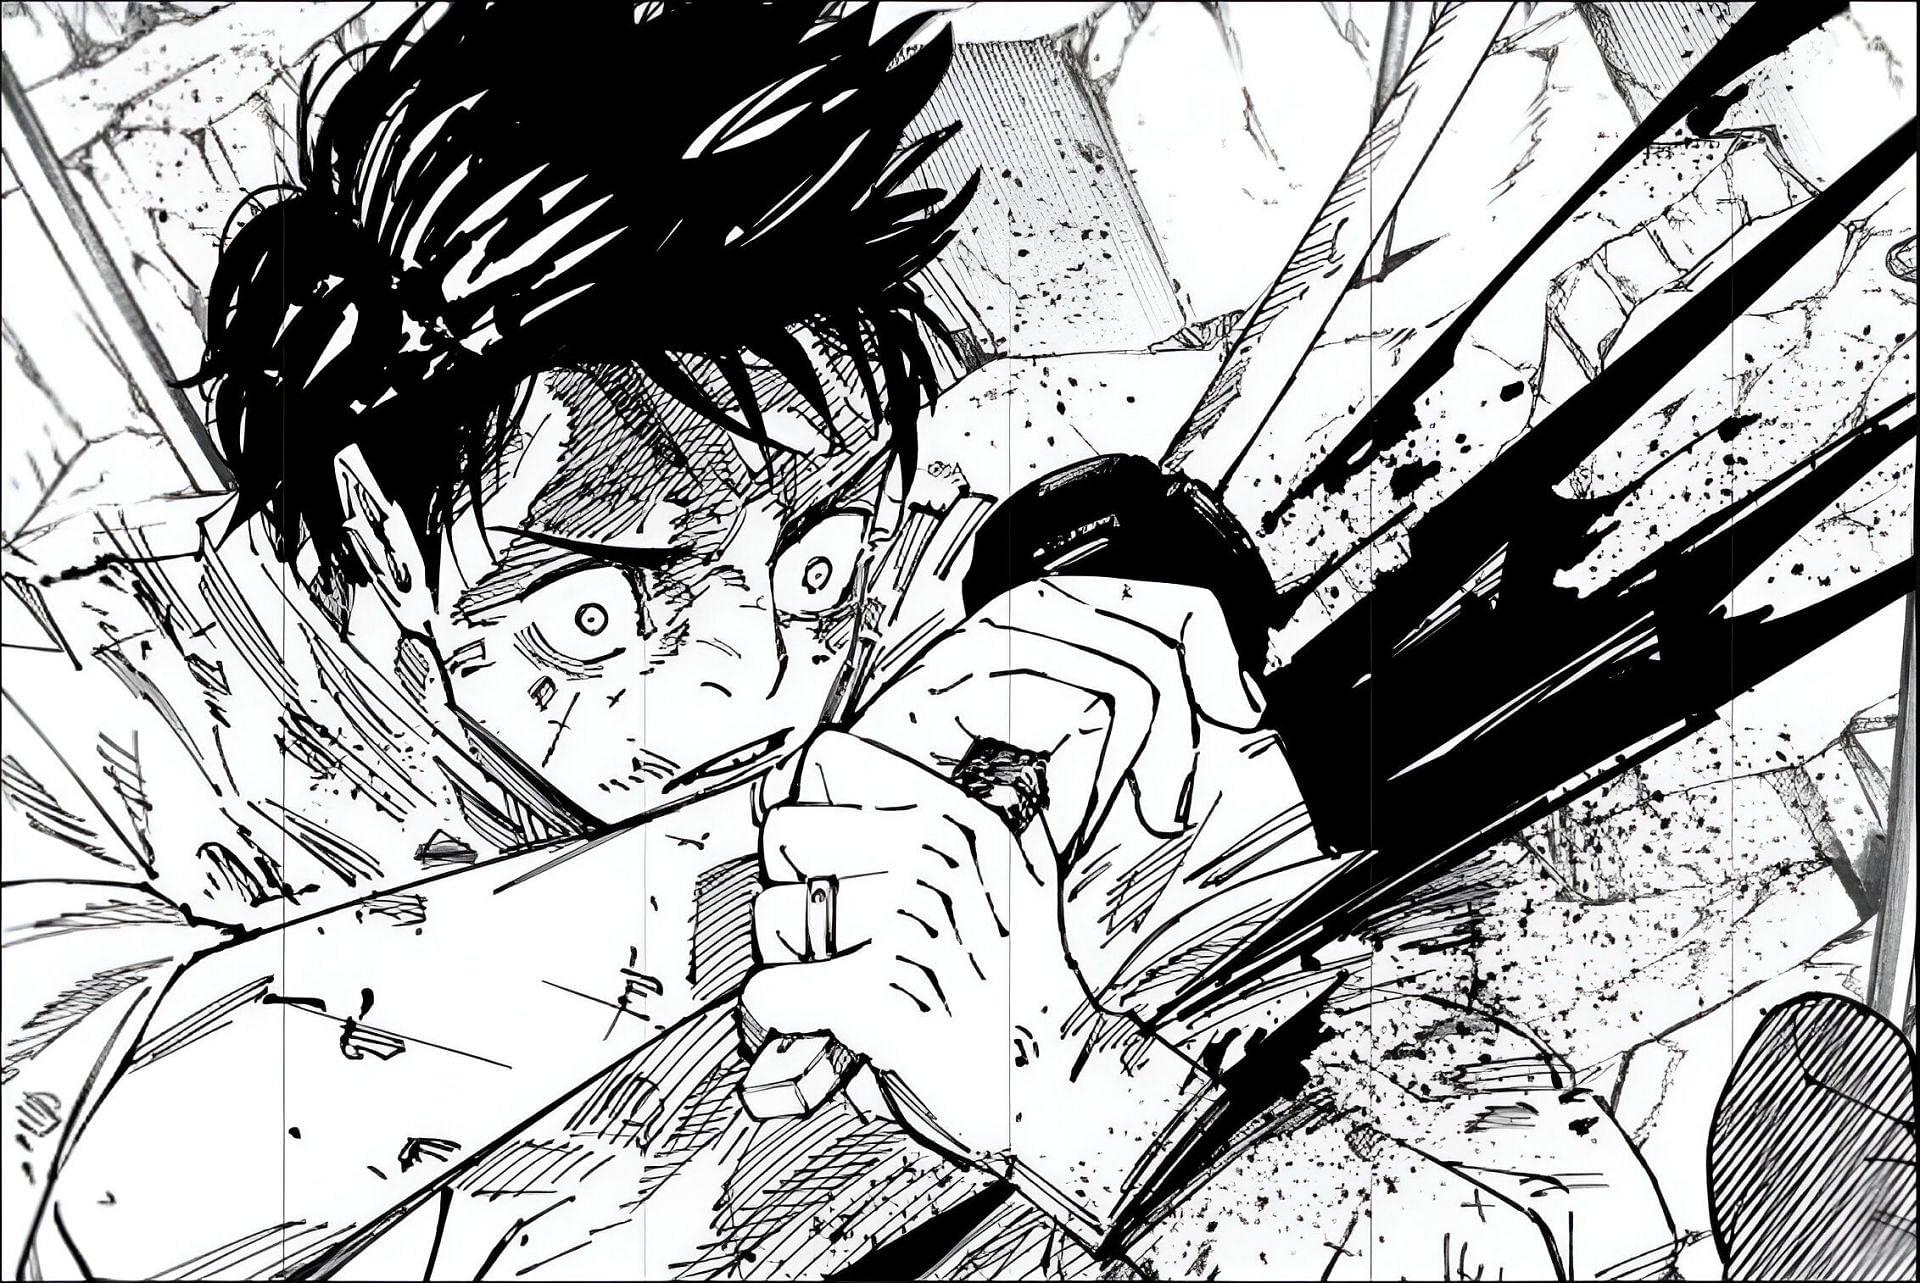 Yuta Okkotsu getting slashed in Jujutsu Kaisen chapter 251 (Image via Gege Akutami, Sheuisha)